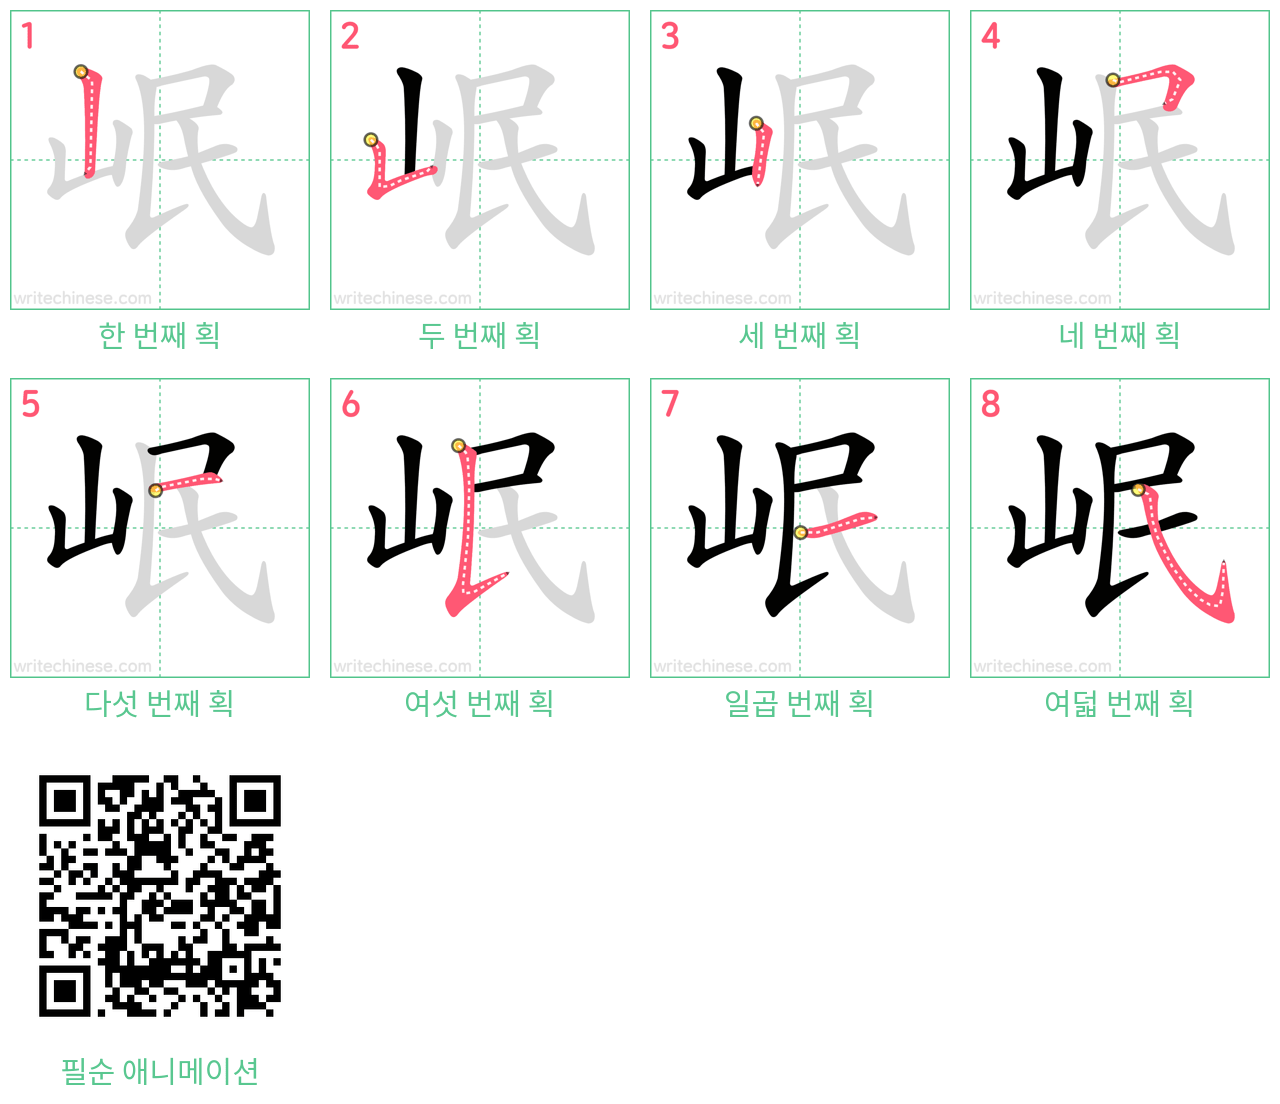 岷 step-by-step stroke order diagrams